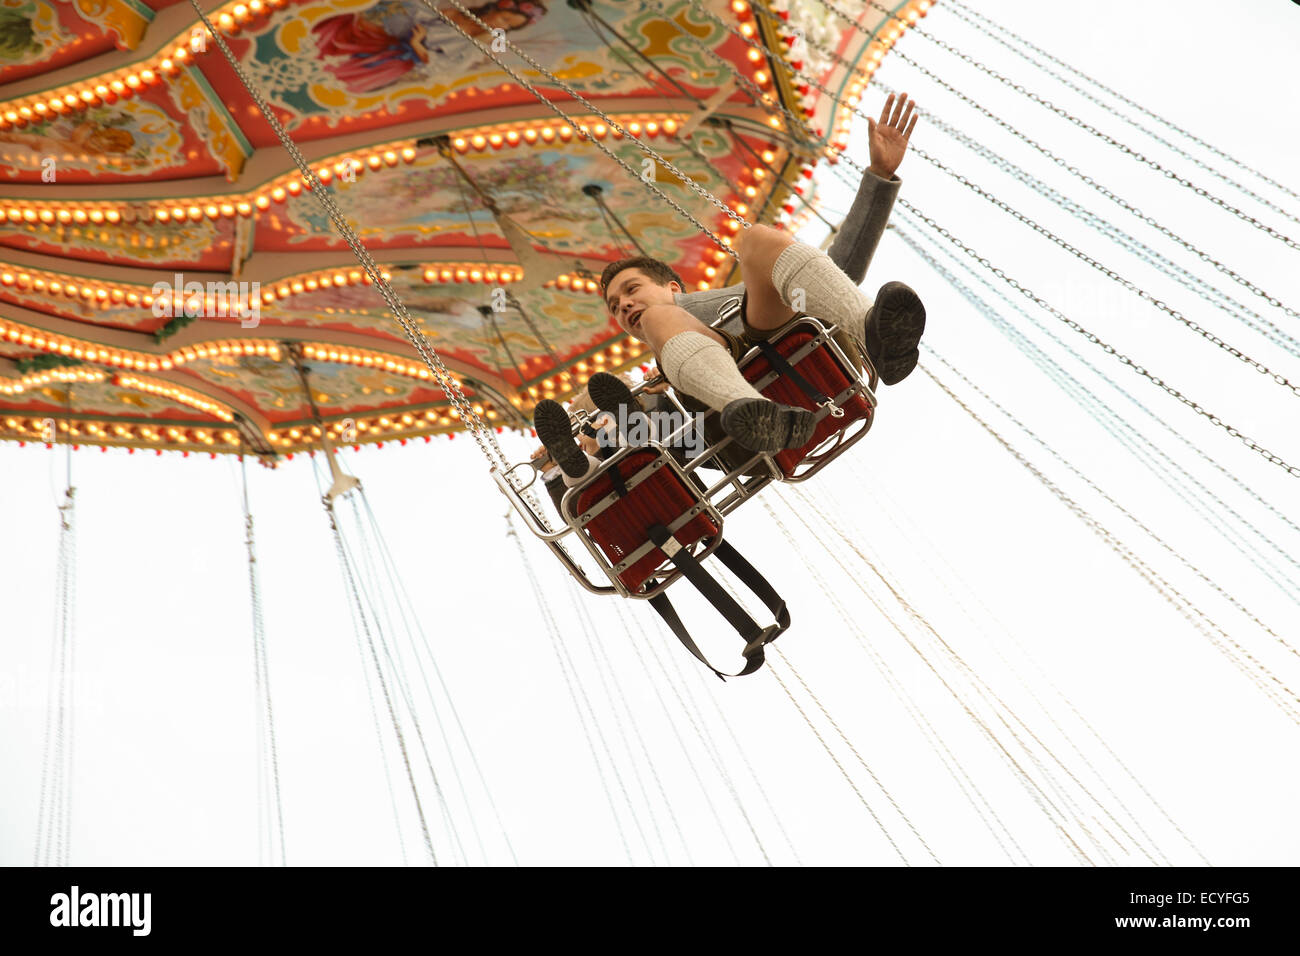 L'allemand man boy flying balançoire ride theme park Oktoberfest de Munich Banque D'Images